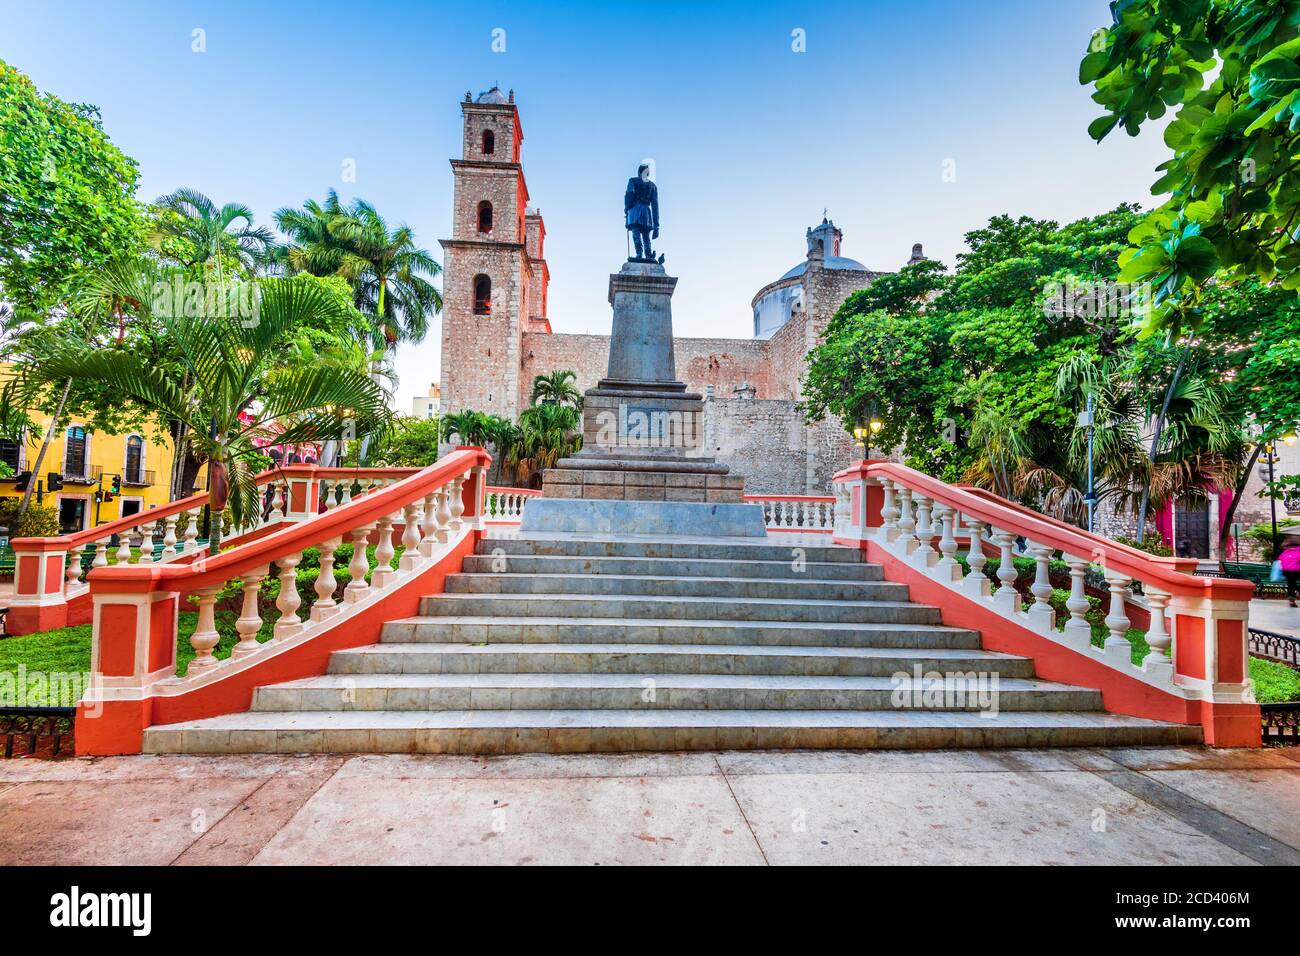 Merida, Mexique. Architecture coloniale hispanique dans le Parque Hidalgo, péninsule du Yucatan en Amérique centrale. Banque D'Images